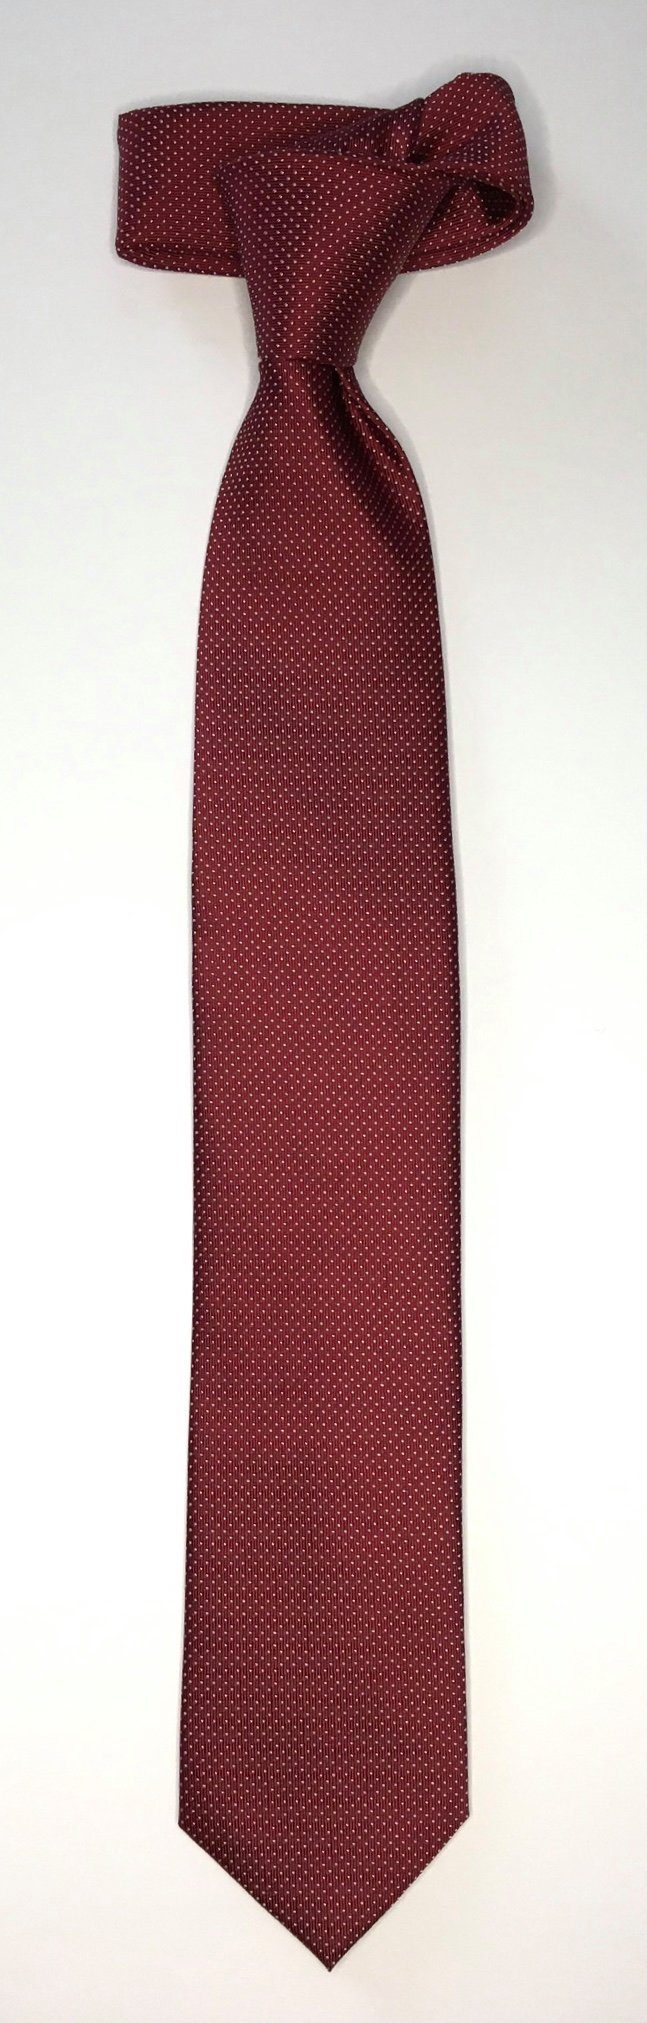 Seidenfalter Krawatte Picoté Design edlen Krawatte Seidenfalter Picoté 6cm Seidenfalter Krawatte im Bordeaux